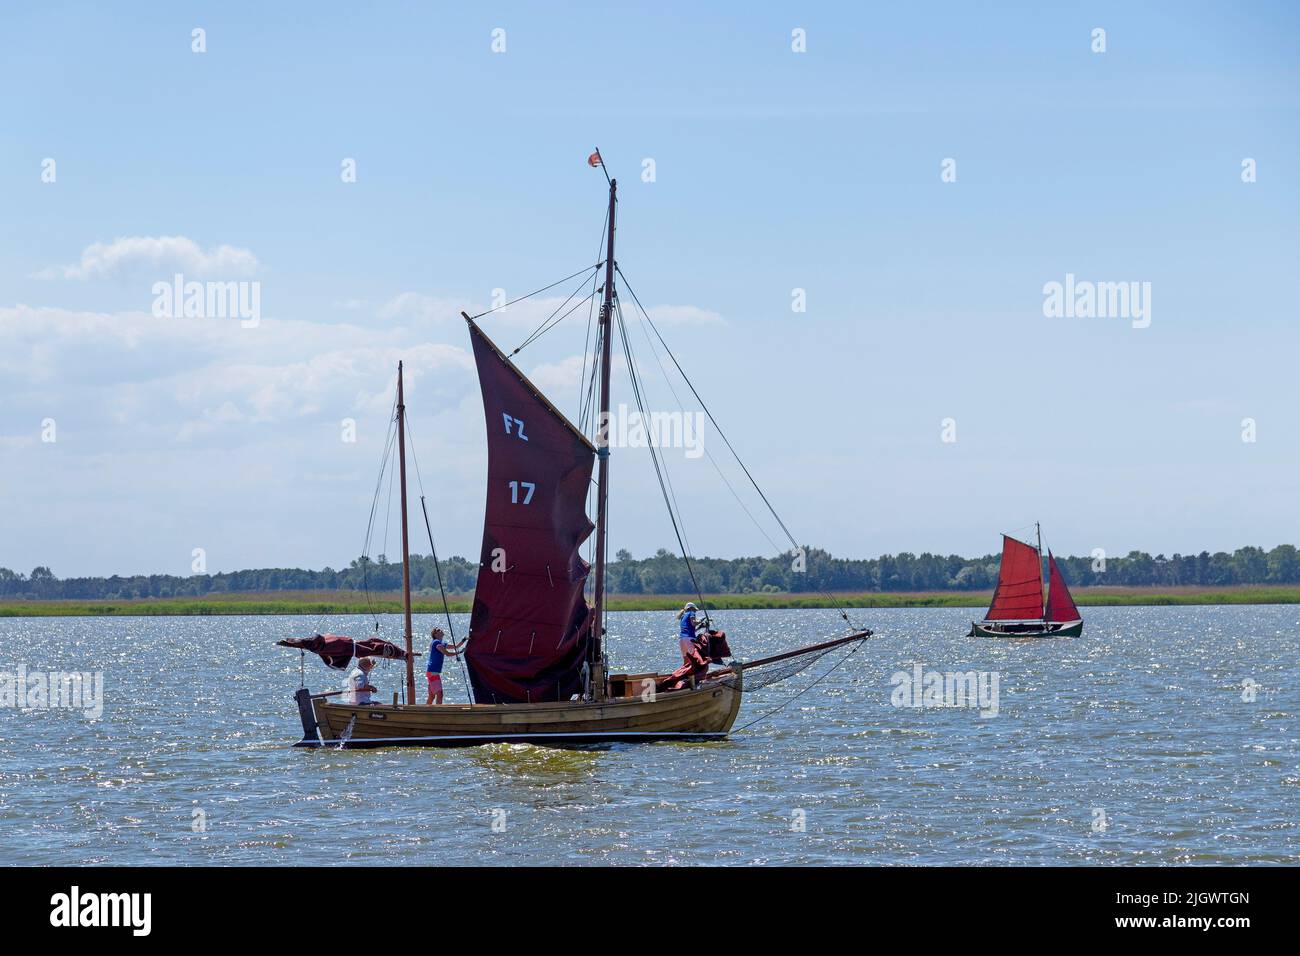 Zeesen Boats, Wustrow, Mecklenburg-West Pomerania, Germany Stock Photo